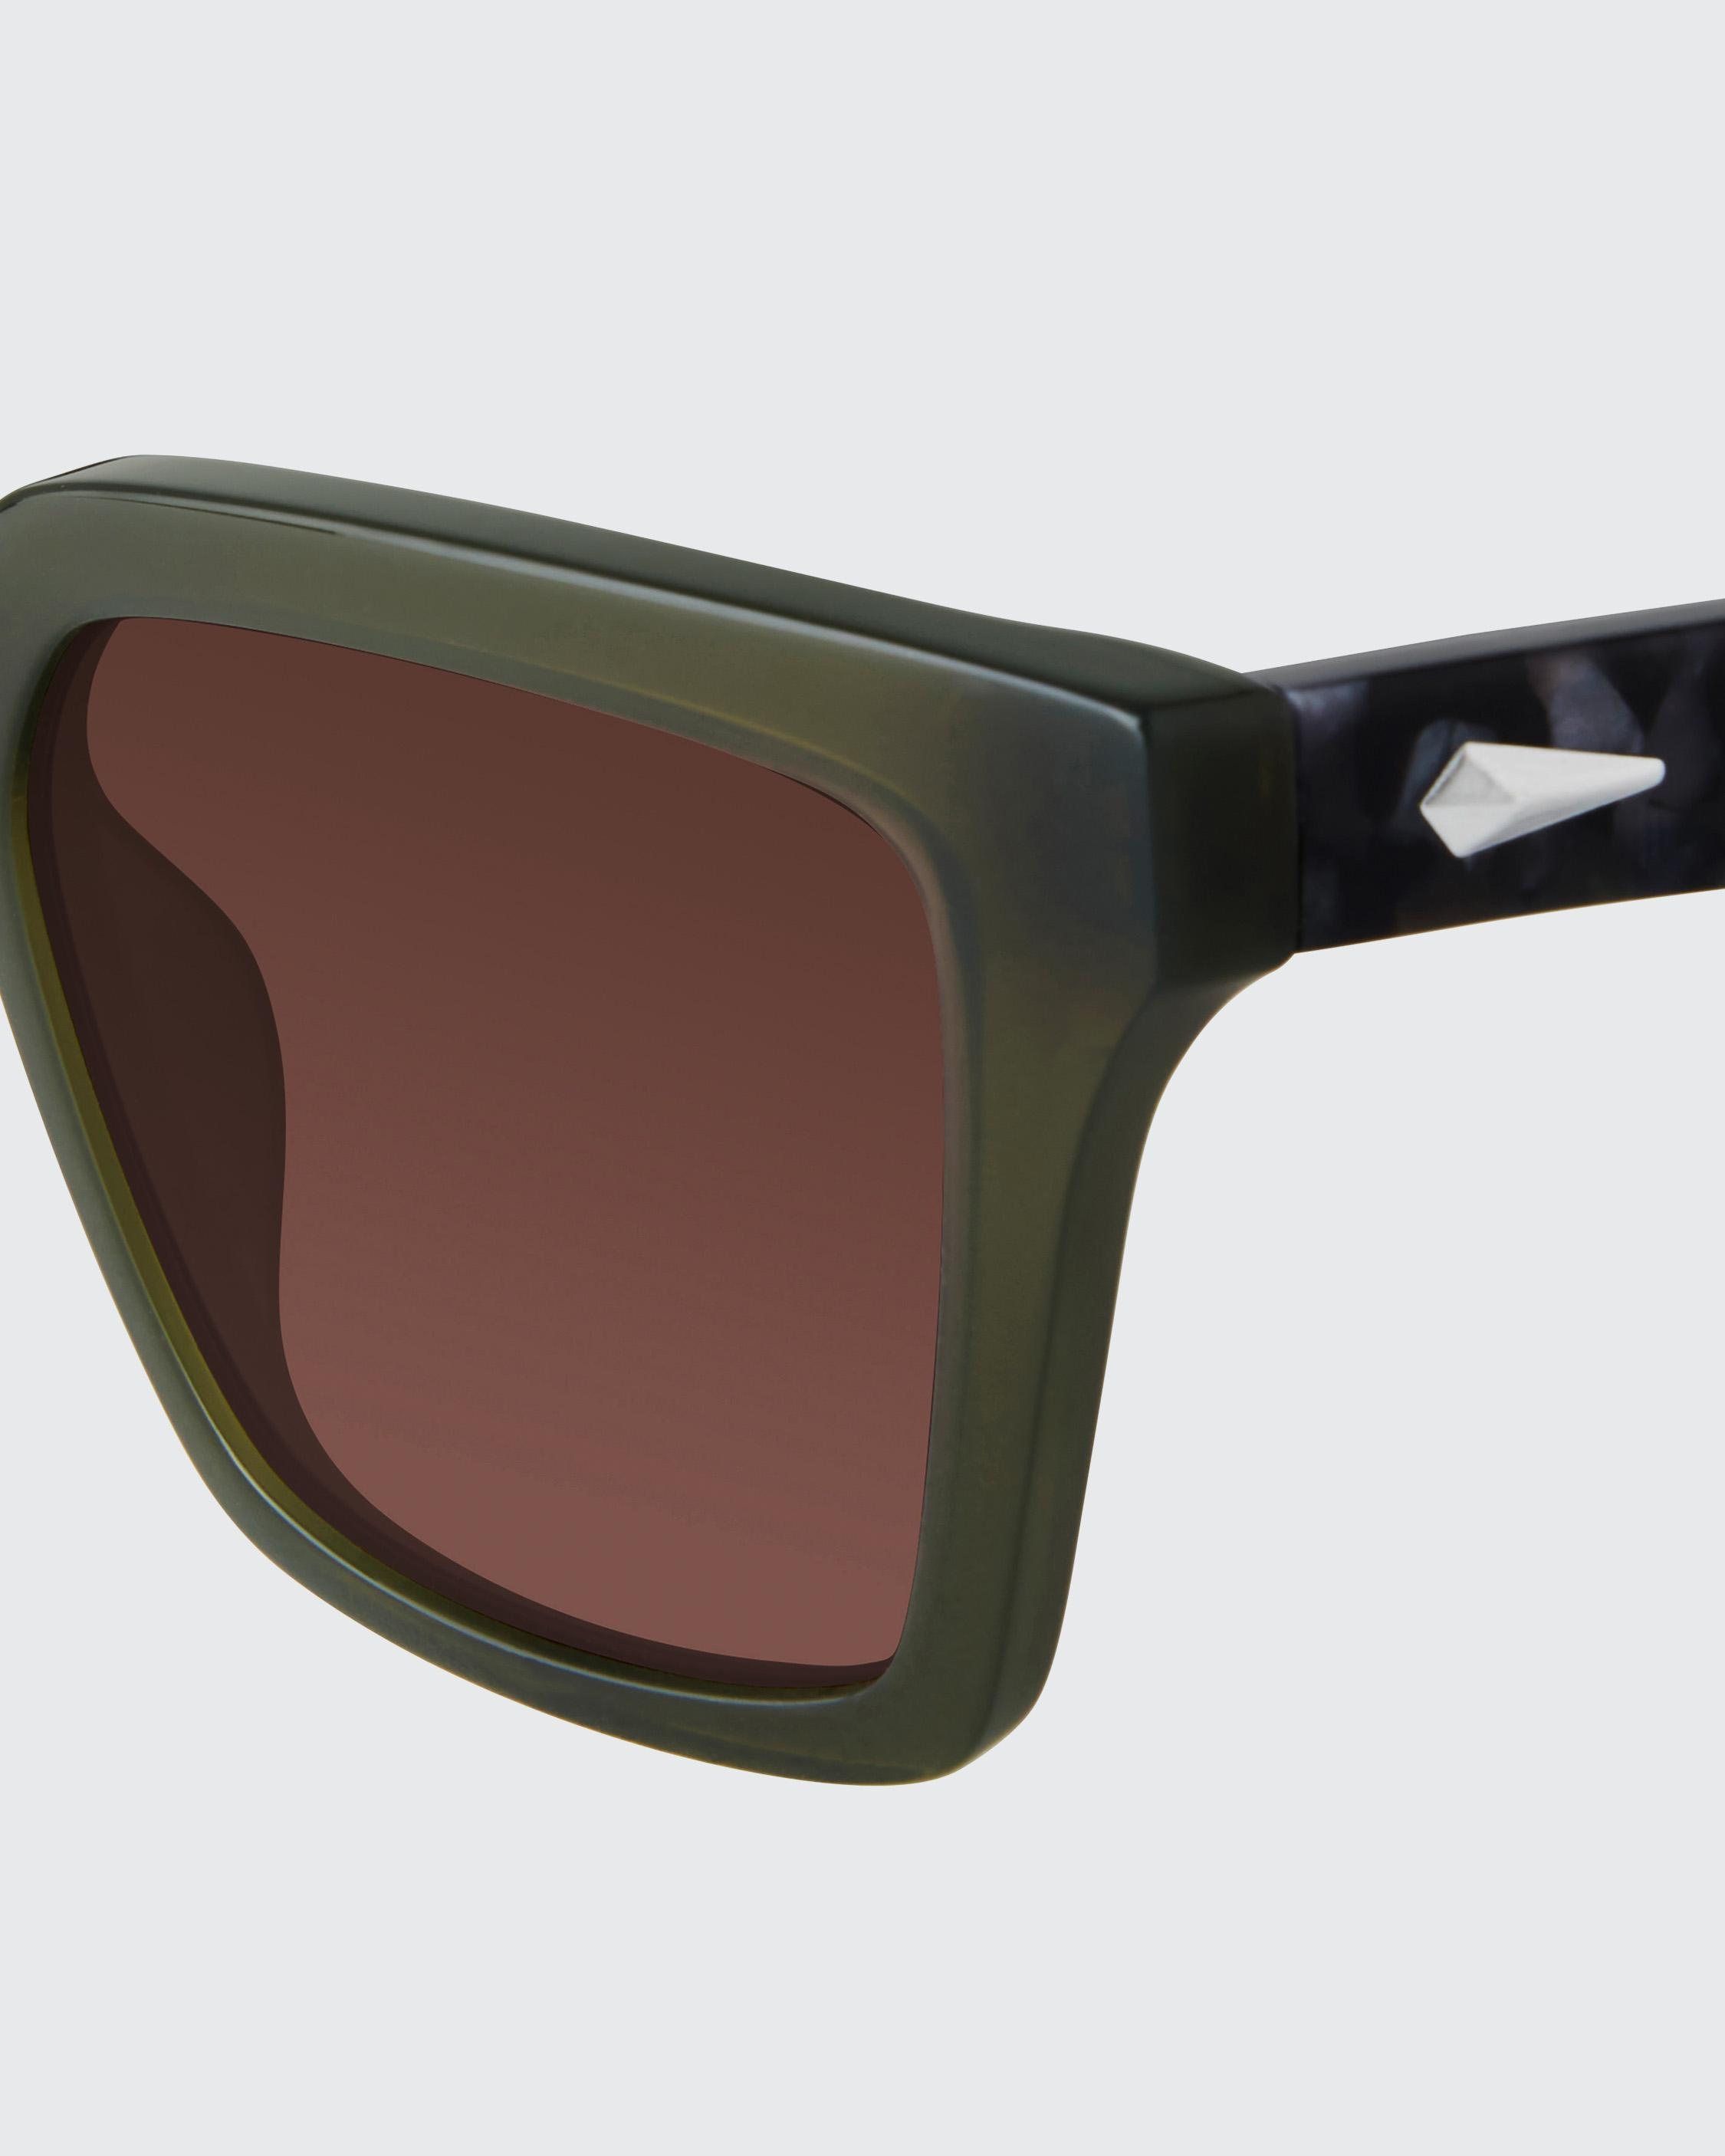 Zander
Square Sunglasses - 3